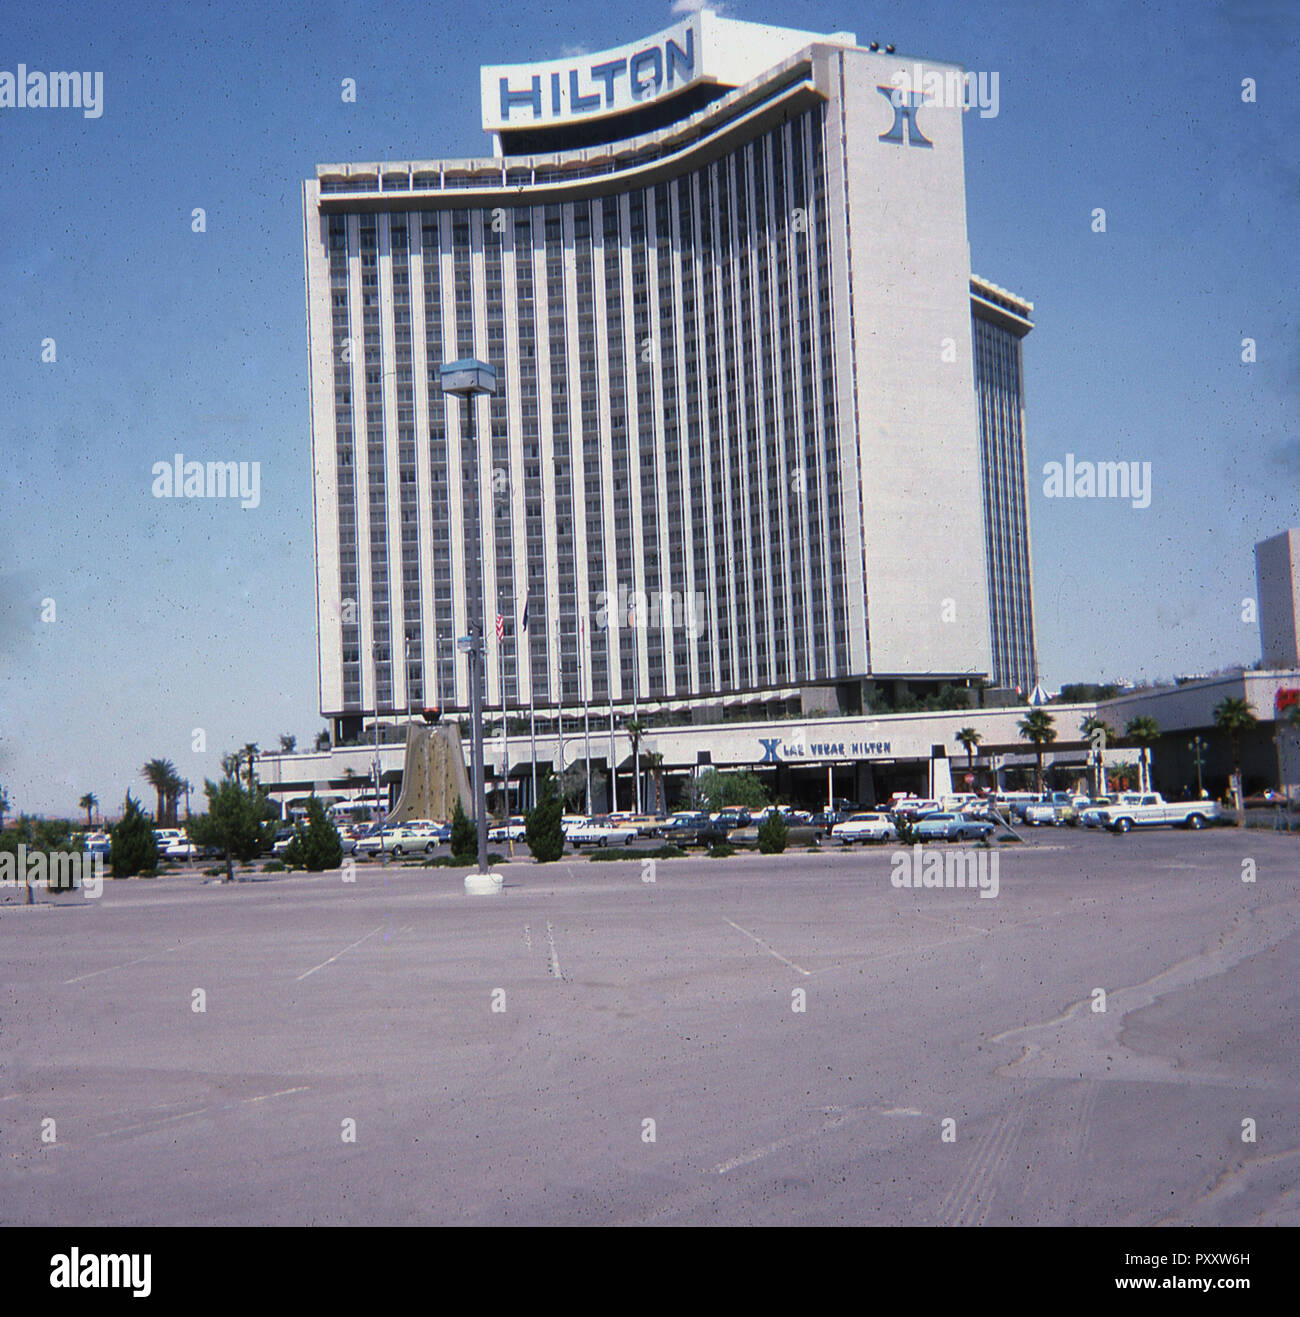 Las Vegas, Nevada, USA, 1975, Äußere des Hllton Hotel, Gebäude und Parkplatz. Ursprünglich die "Internationale", als es 1969 eröffnet wurde Nevada's höchste Gebäude bezeichnet. Es war das Las Vegas Hilton 1971 umbenannt. Dieses Bild wurde vor dem späteren Ergänzungen der Hotel, sah es 1981 werden das größte Hotel der Welt. Das Hotel berühmt für unter anderem ist, Elvis es durchführen, der für sieben Jahre im Hotel erschienen, umfasst 636 aufeinanderfolgenden ausverkauften Shows. Stockfoto